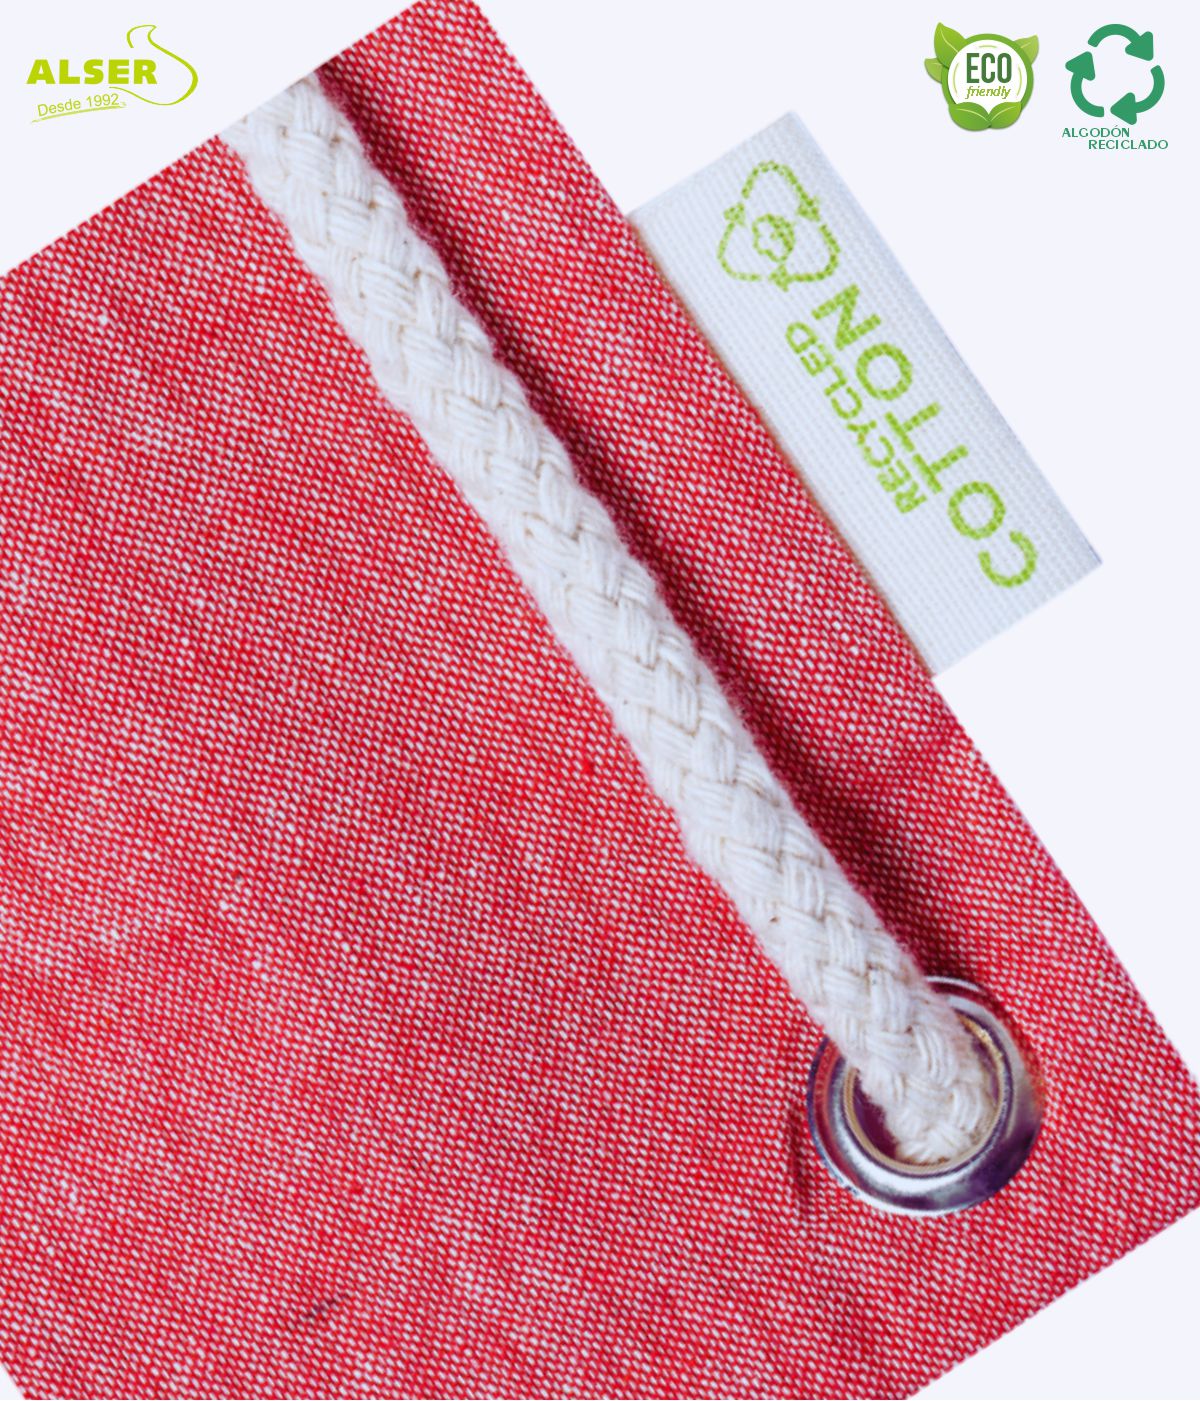 Detalle Bolsa mochila etiqueta algodon reciclado